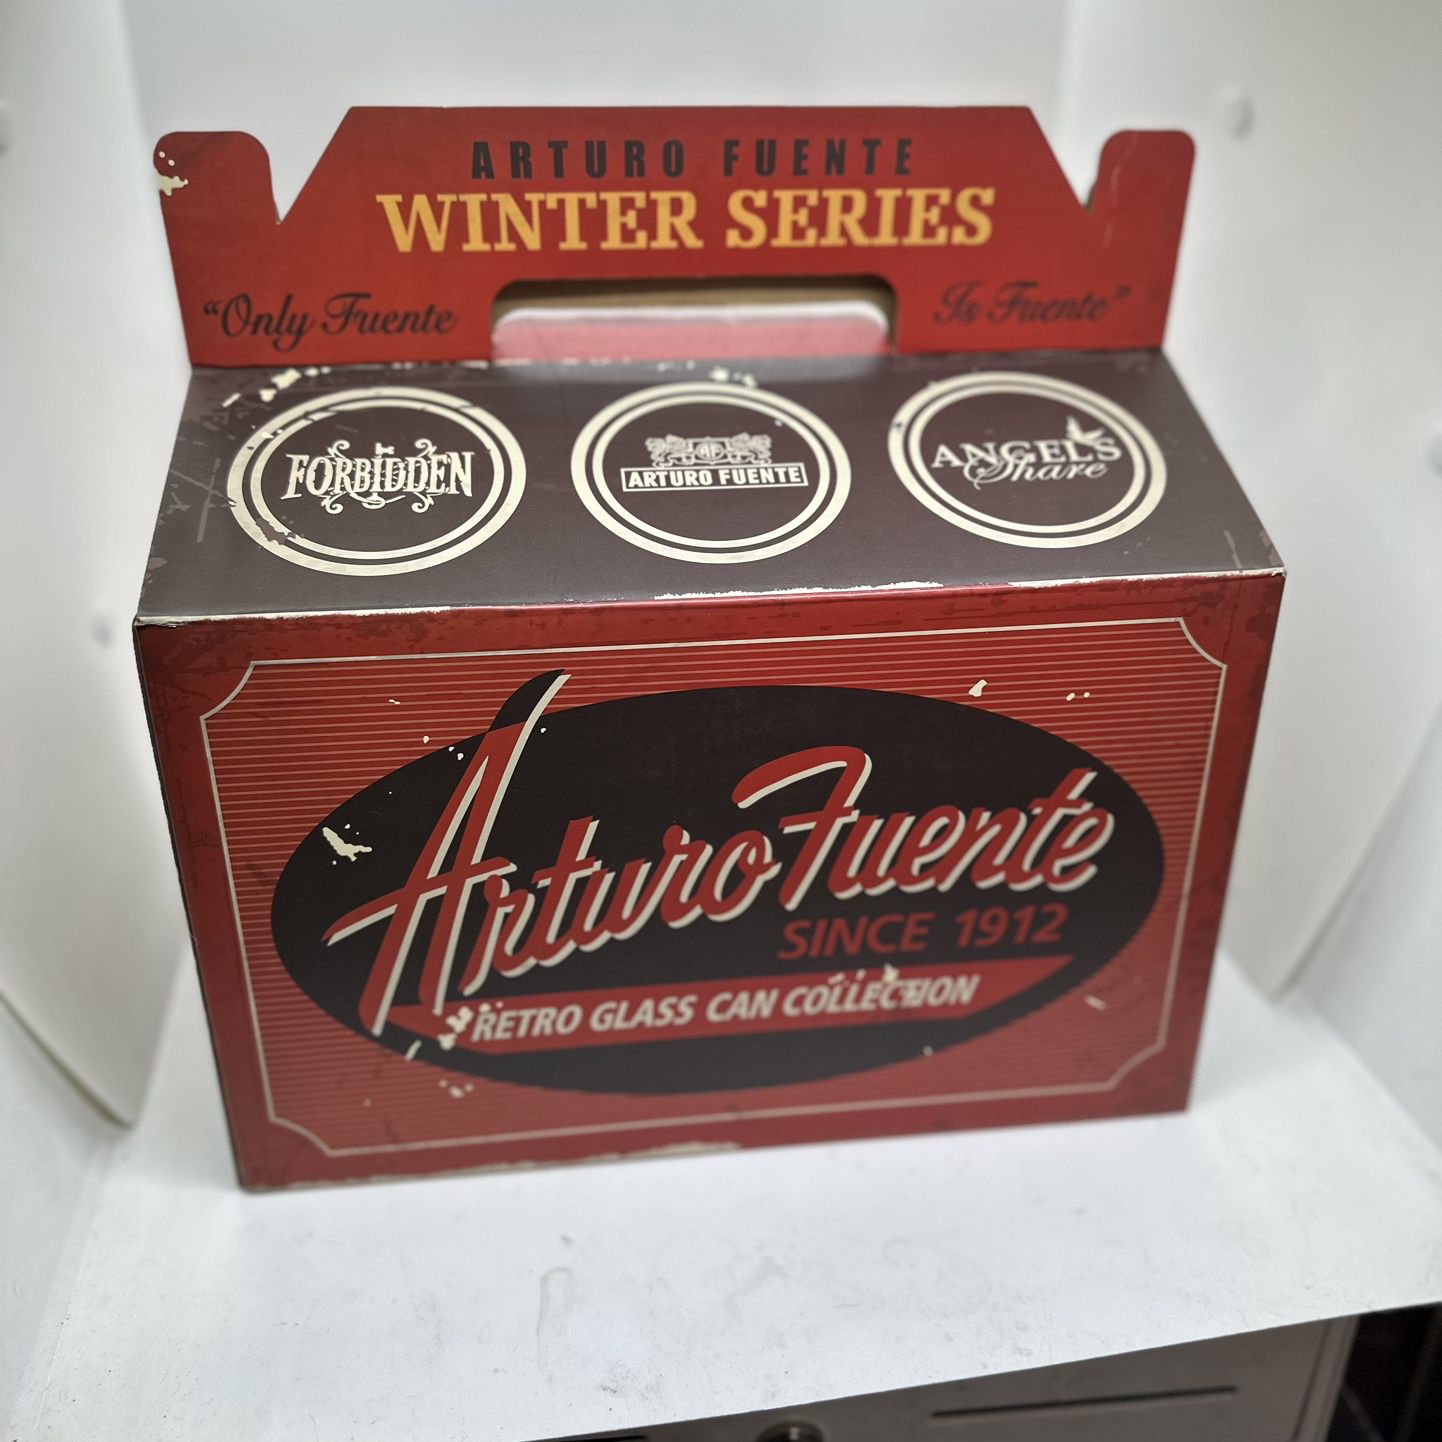 Arturo fuente Retro Glass Can Collection: The Winter Series